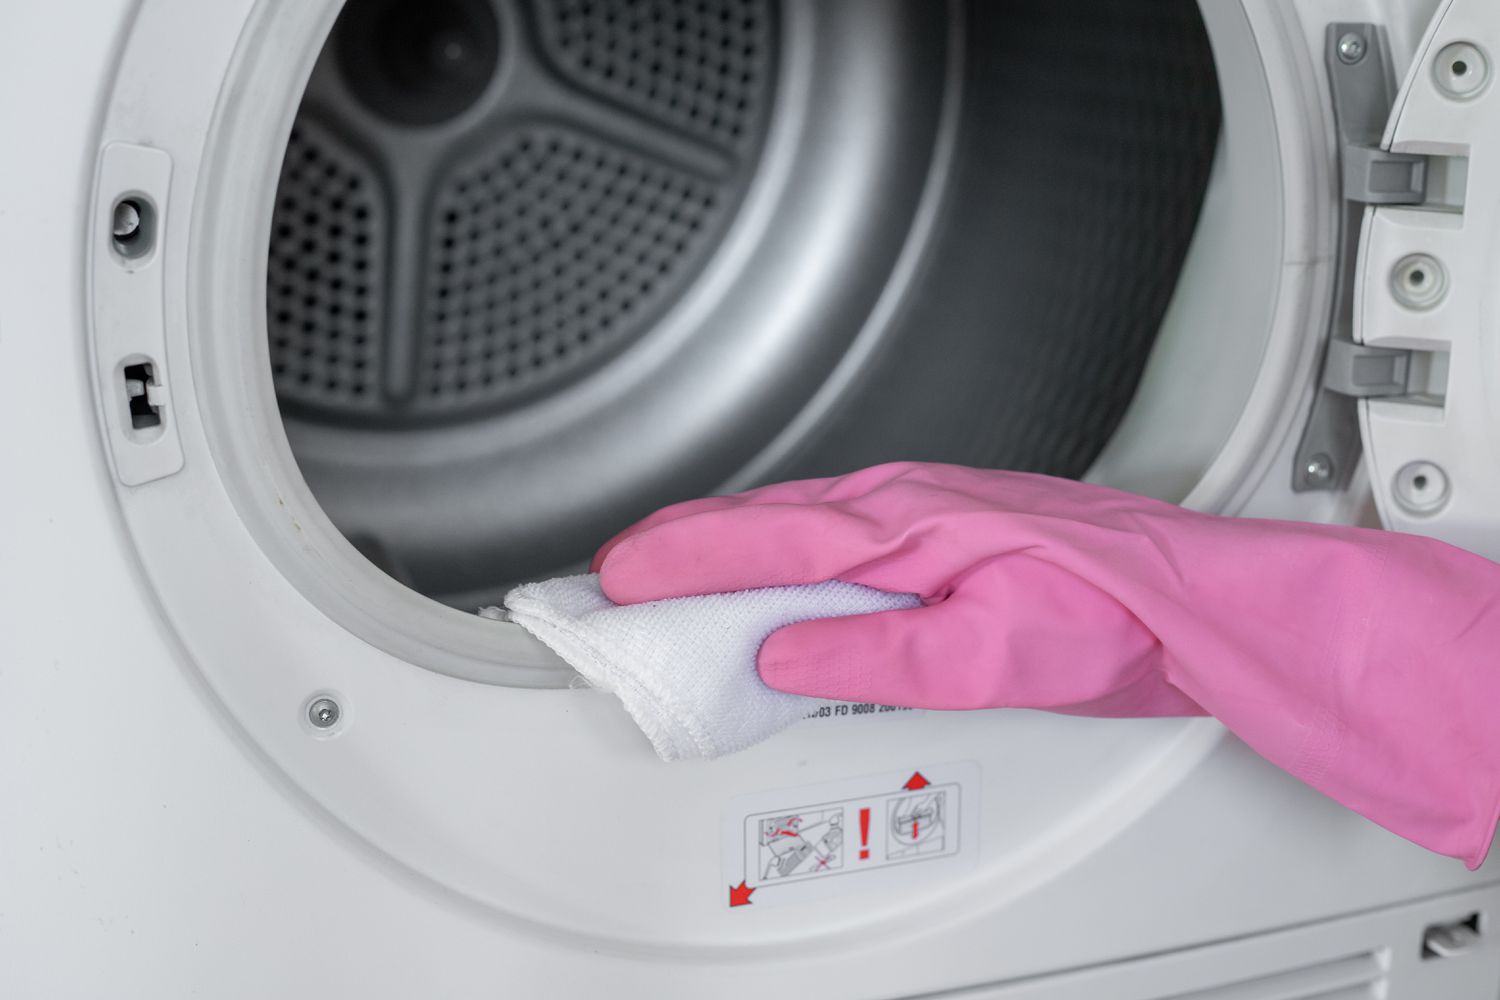 Tambour de machine à sécher essuyé avec un chiffon imbibé de solution chlorée avec des gants roses